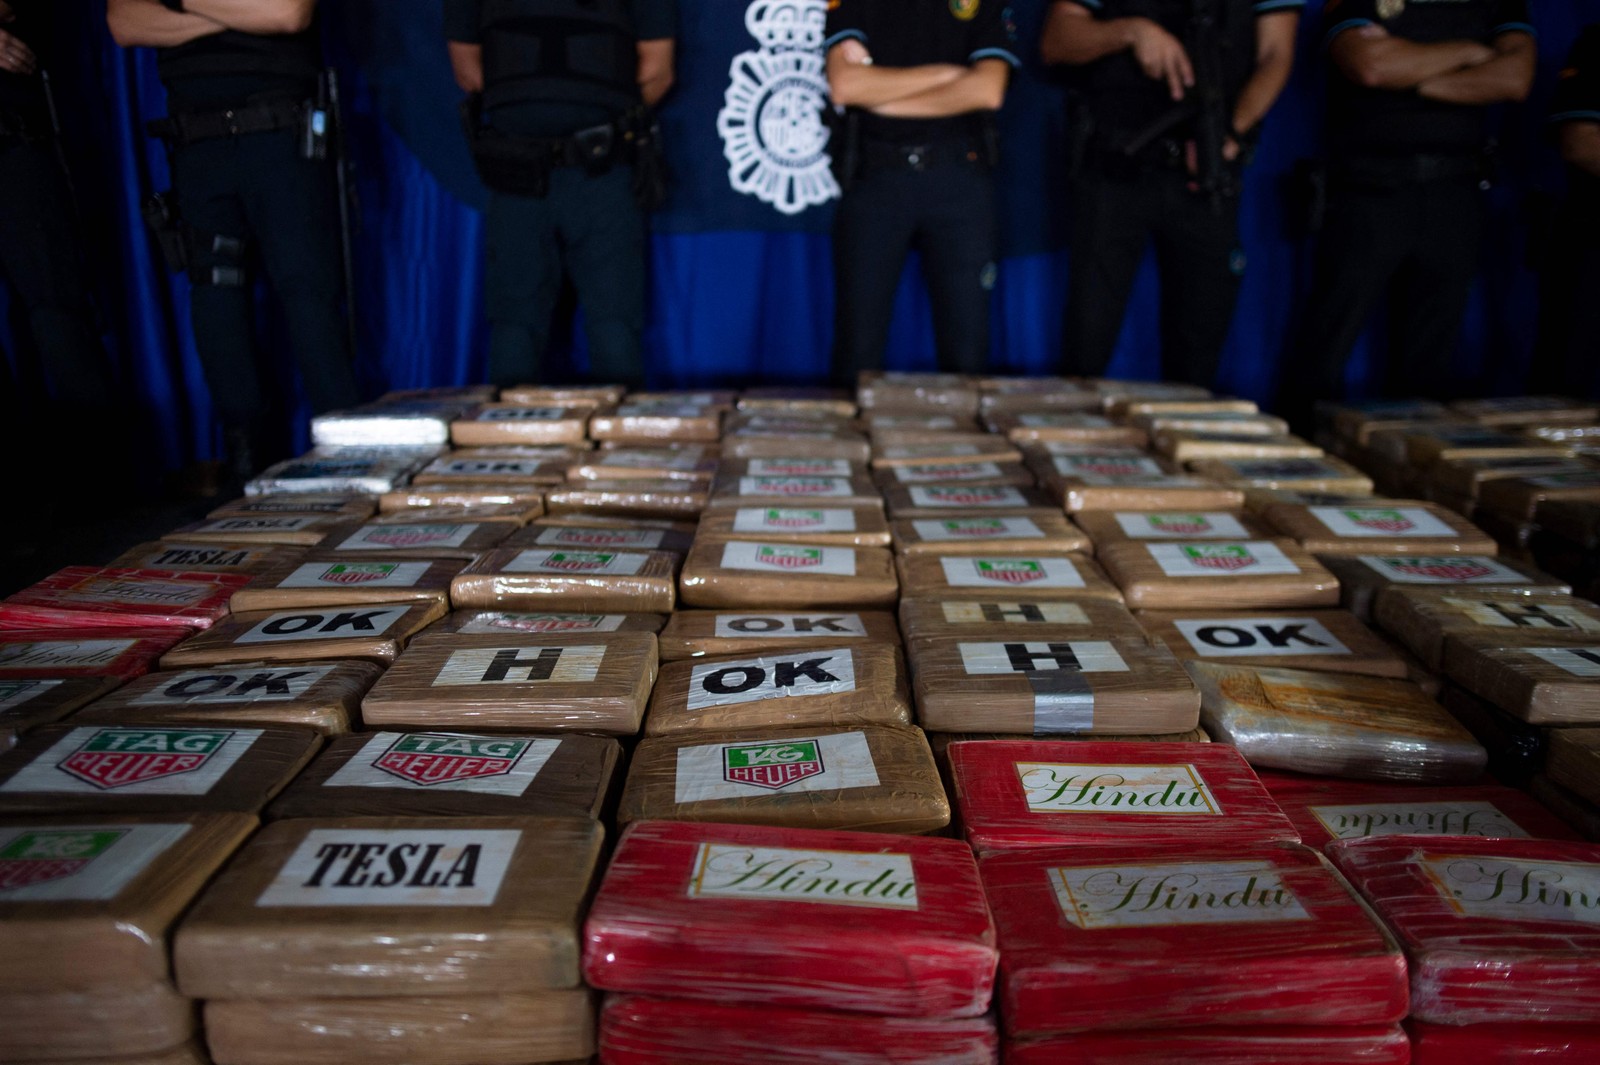 Nos últimos anos, o Equador tornou-se um ator-chave no comércio regional de cocaína — Foto: Jorge Guerrero / AFP